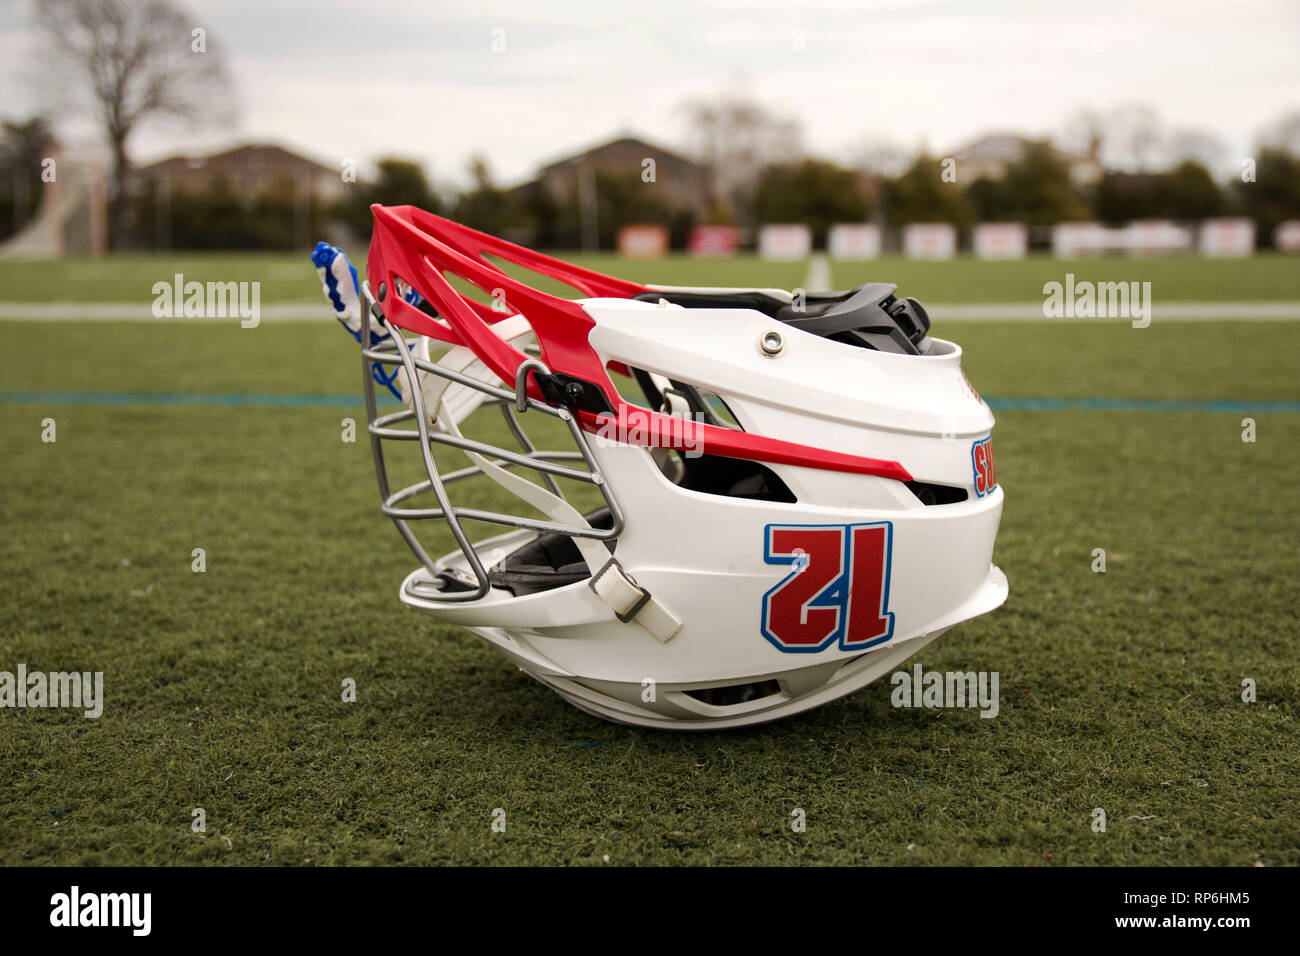 A lacrosse helmet is upside down on a green turf field Stock Photo